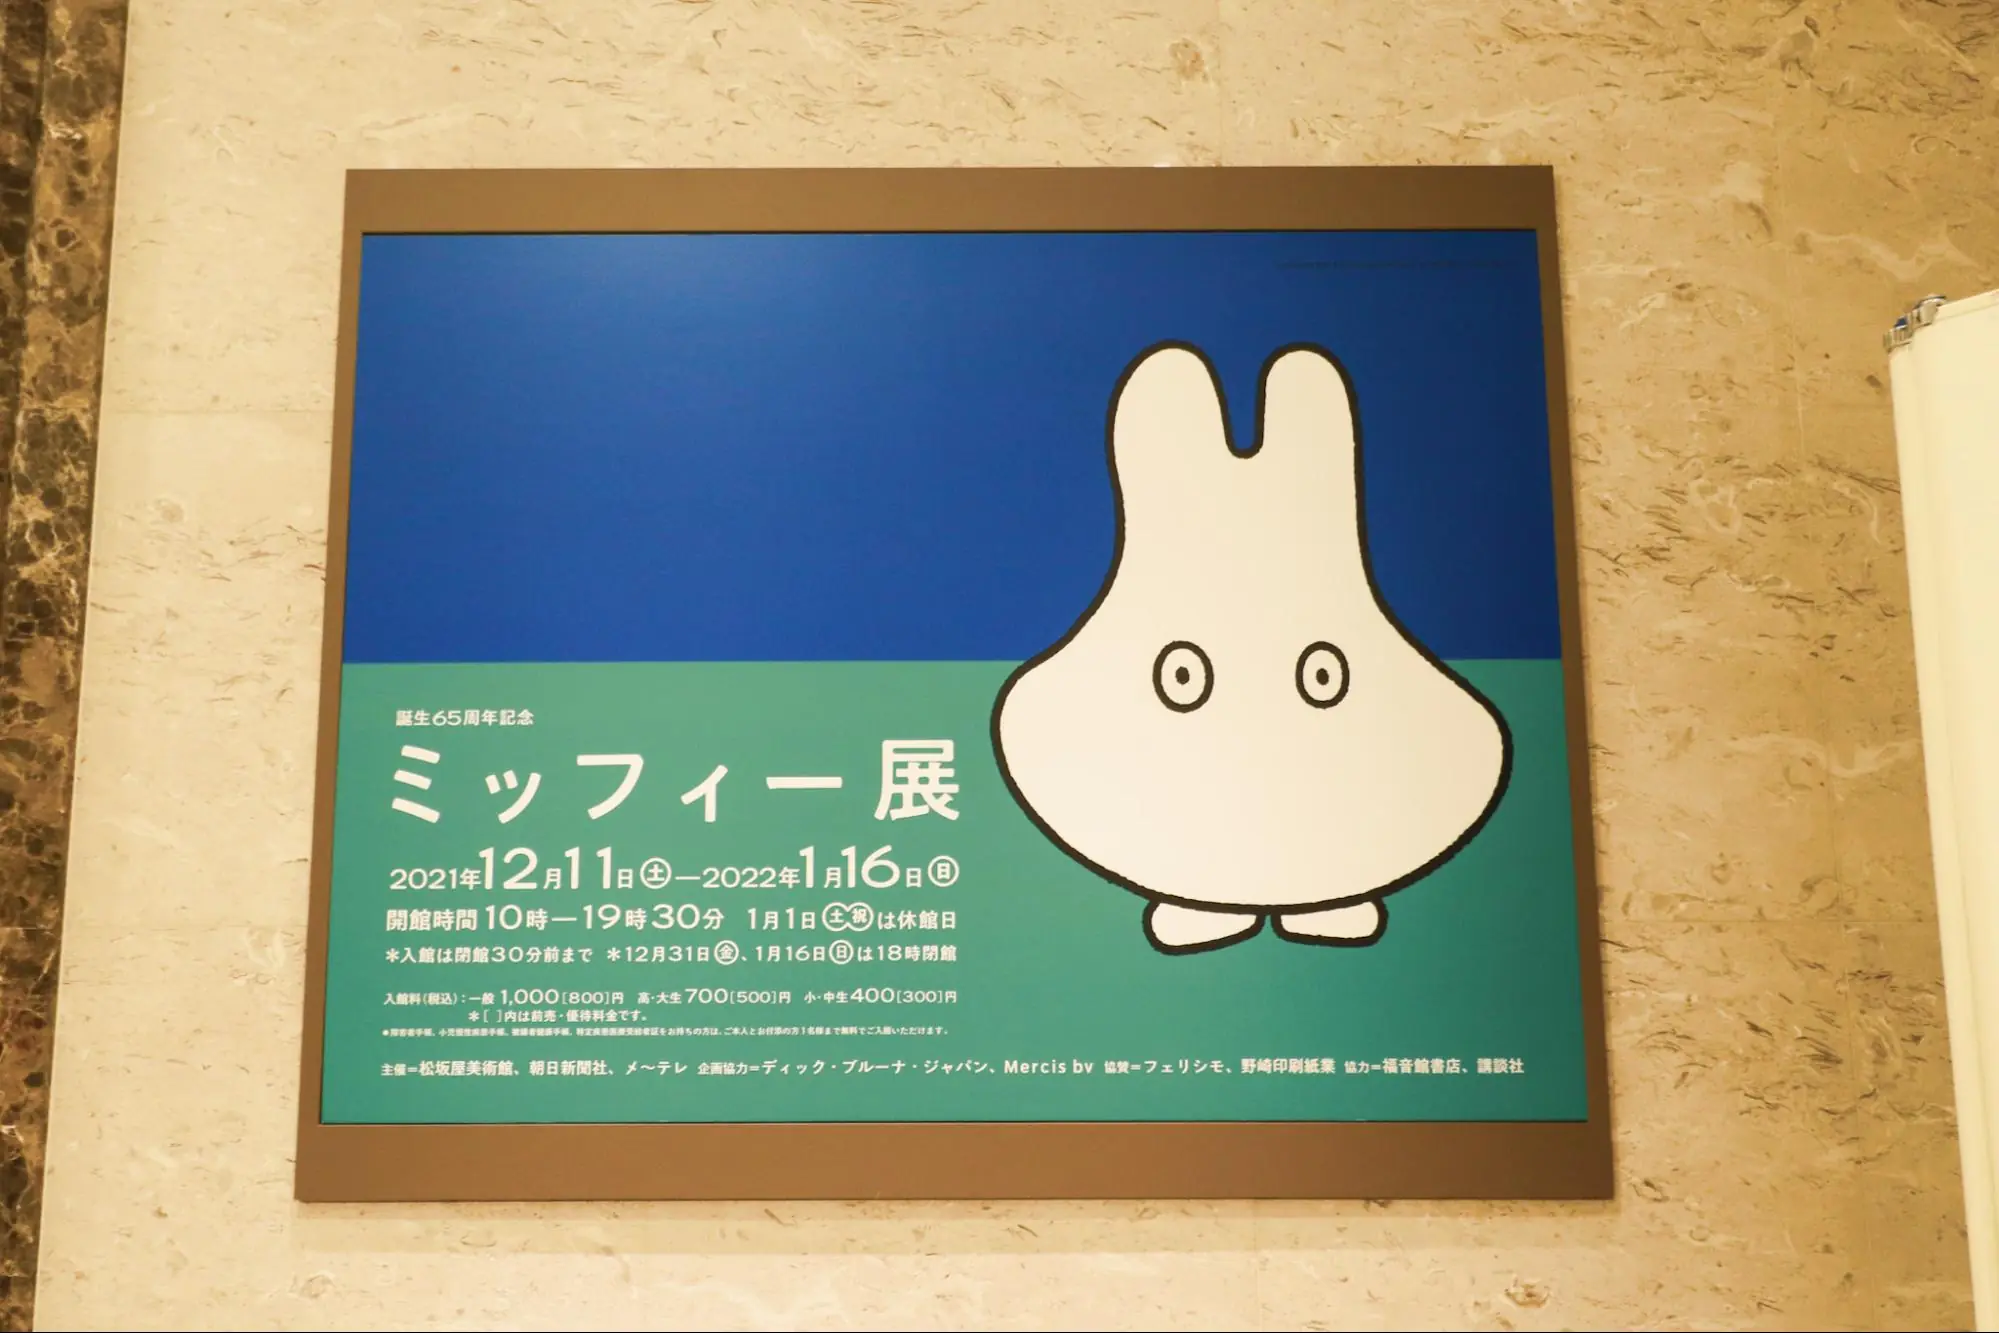 【レポート】誕生65周年記念「ミッフィー展」が松坂屋美術館にて開催中